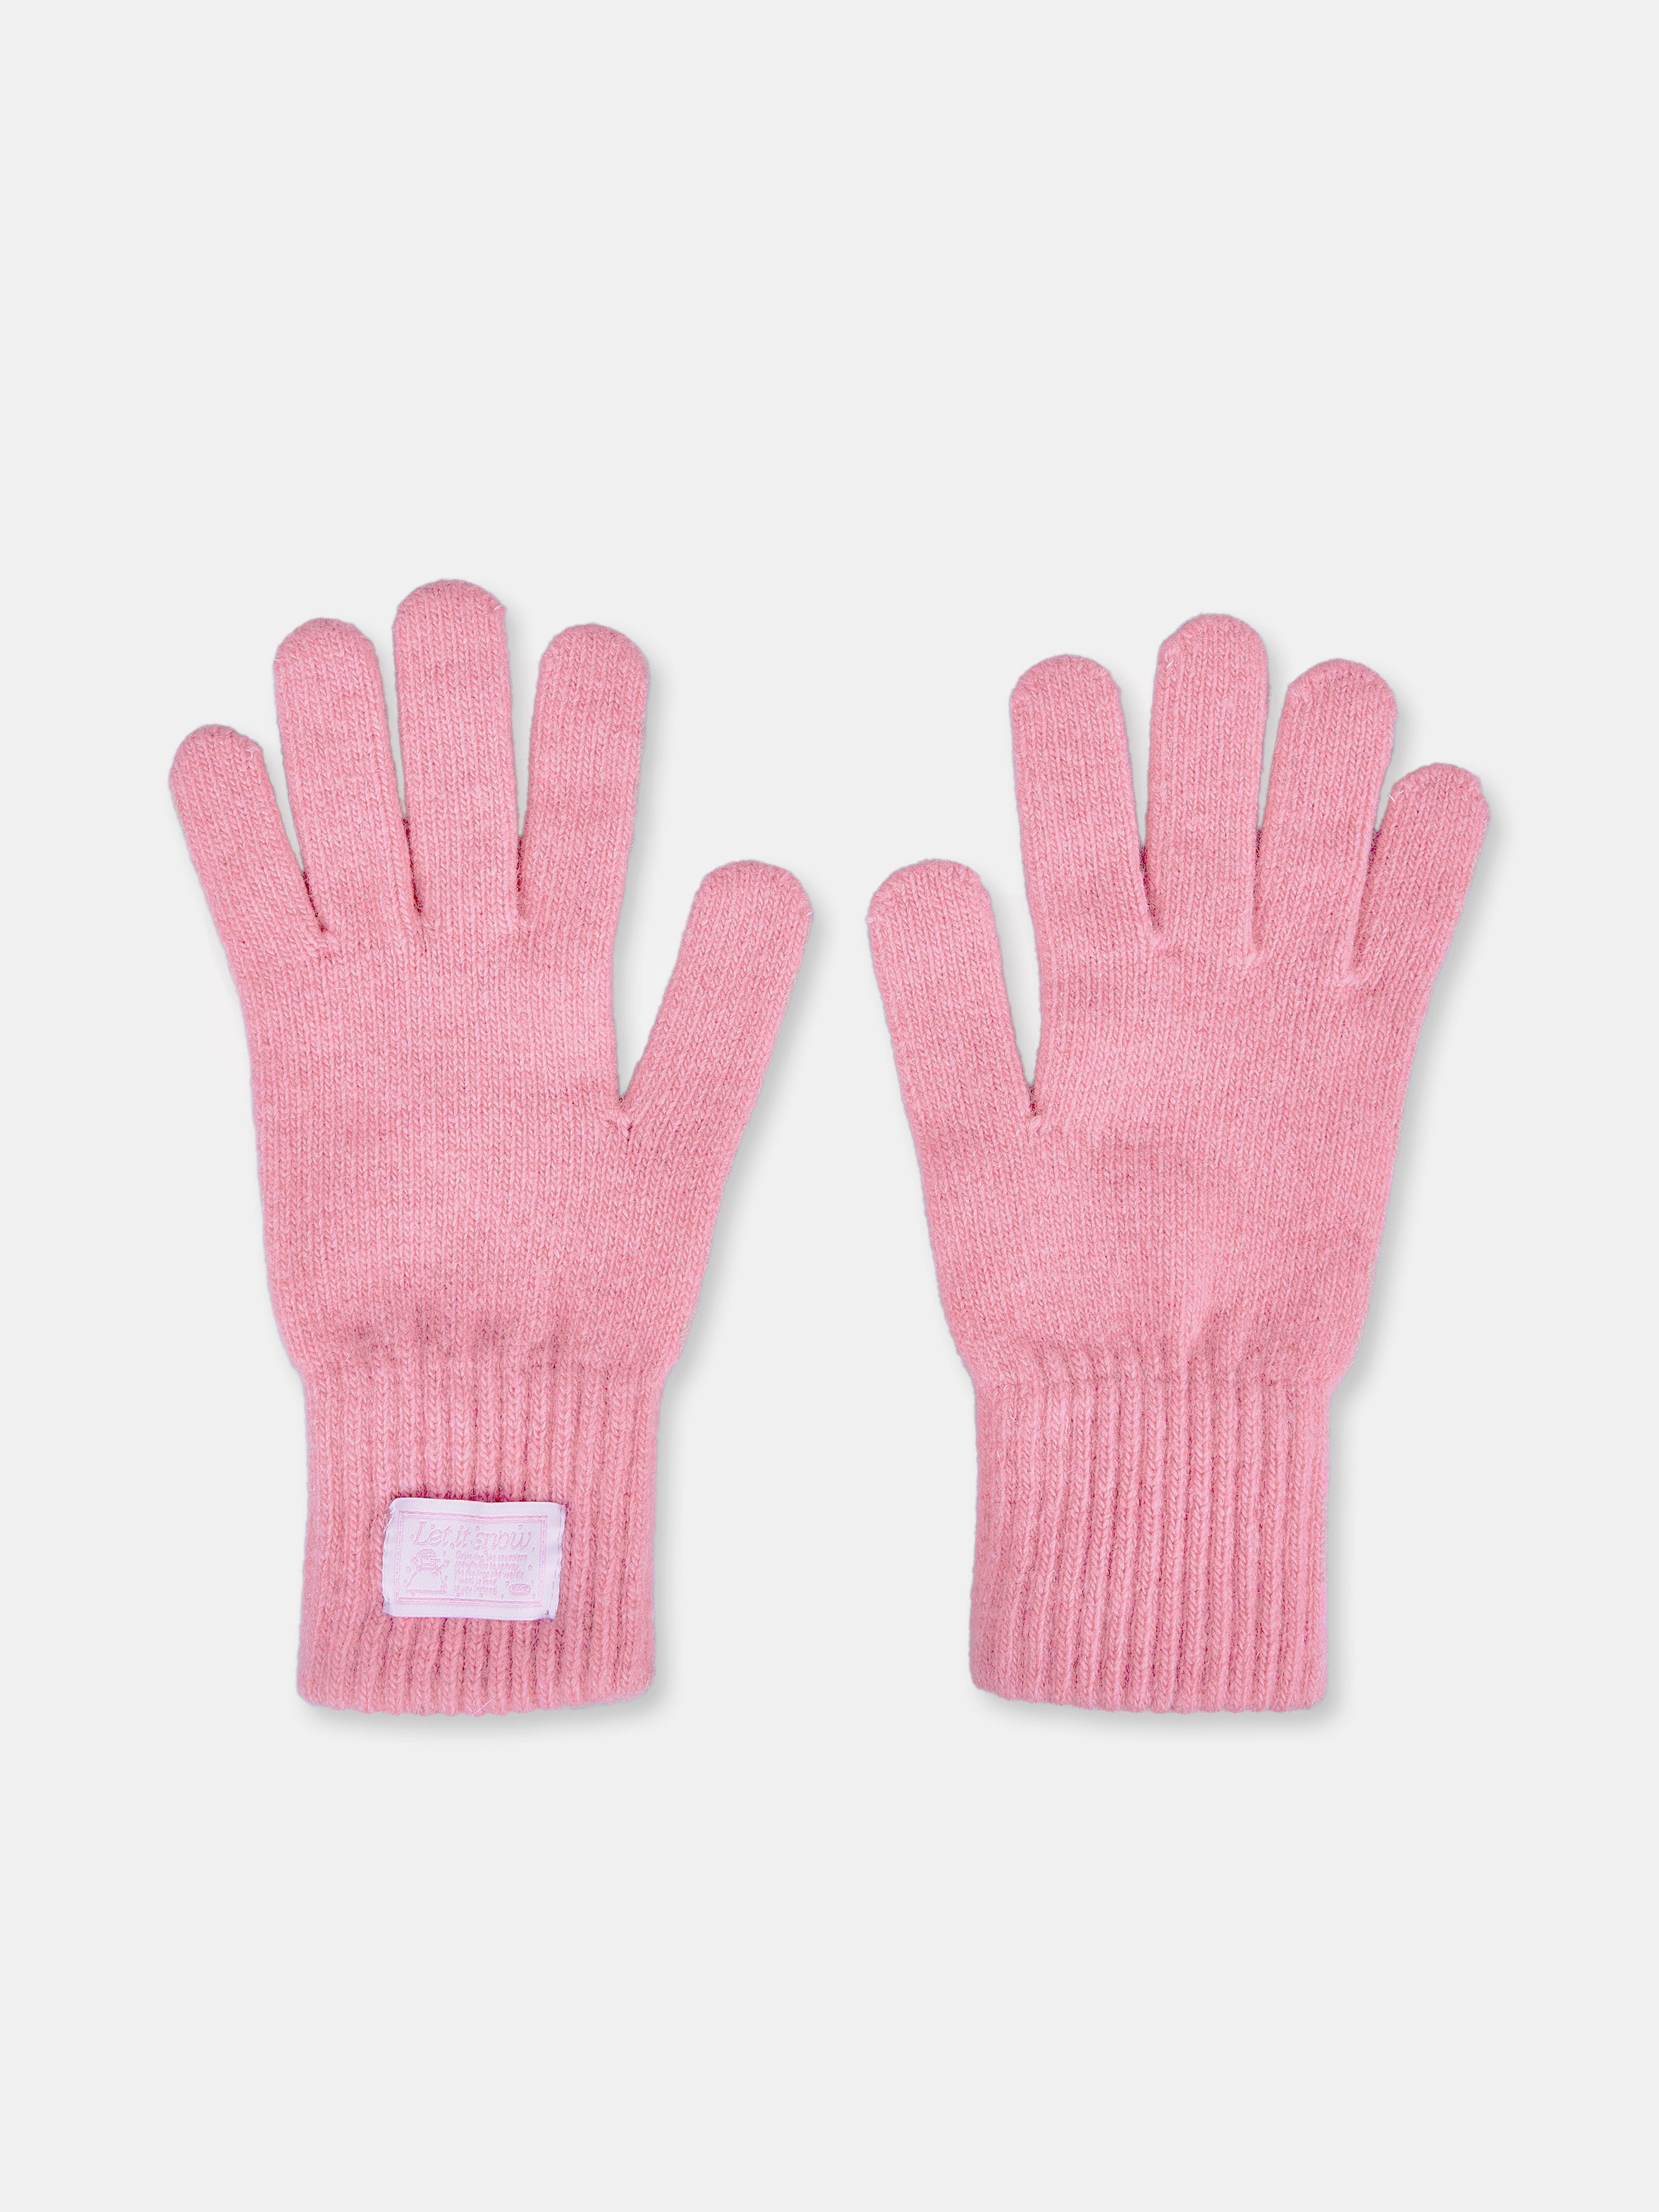 let it snow label gloves (pink)